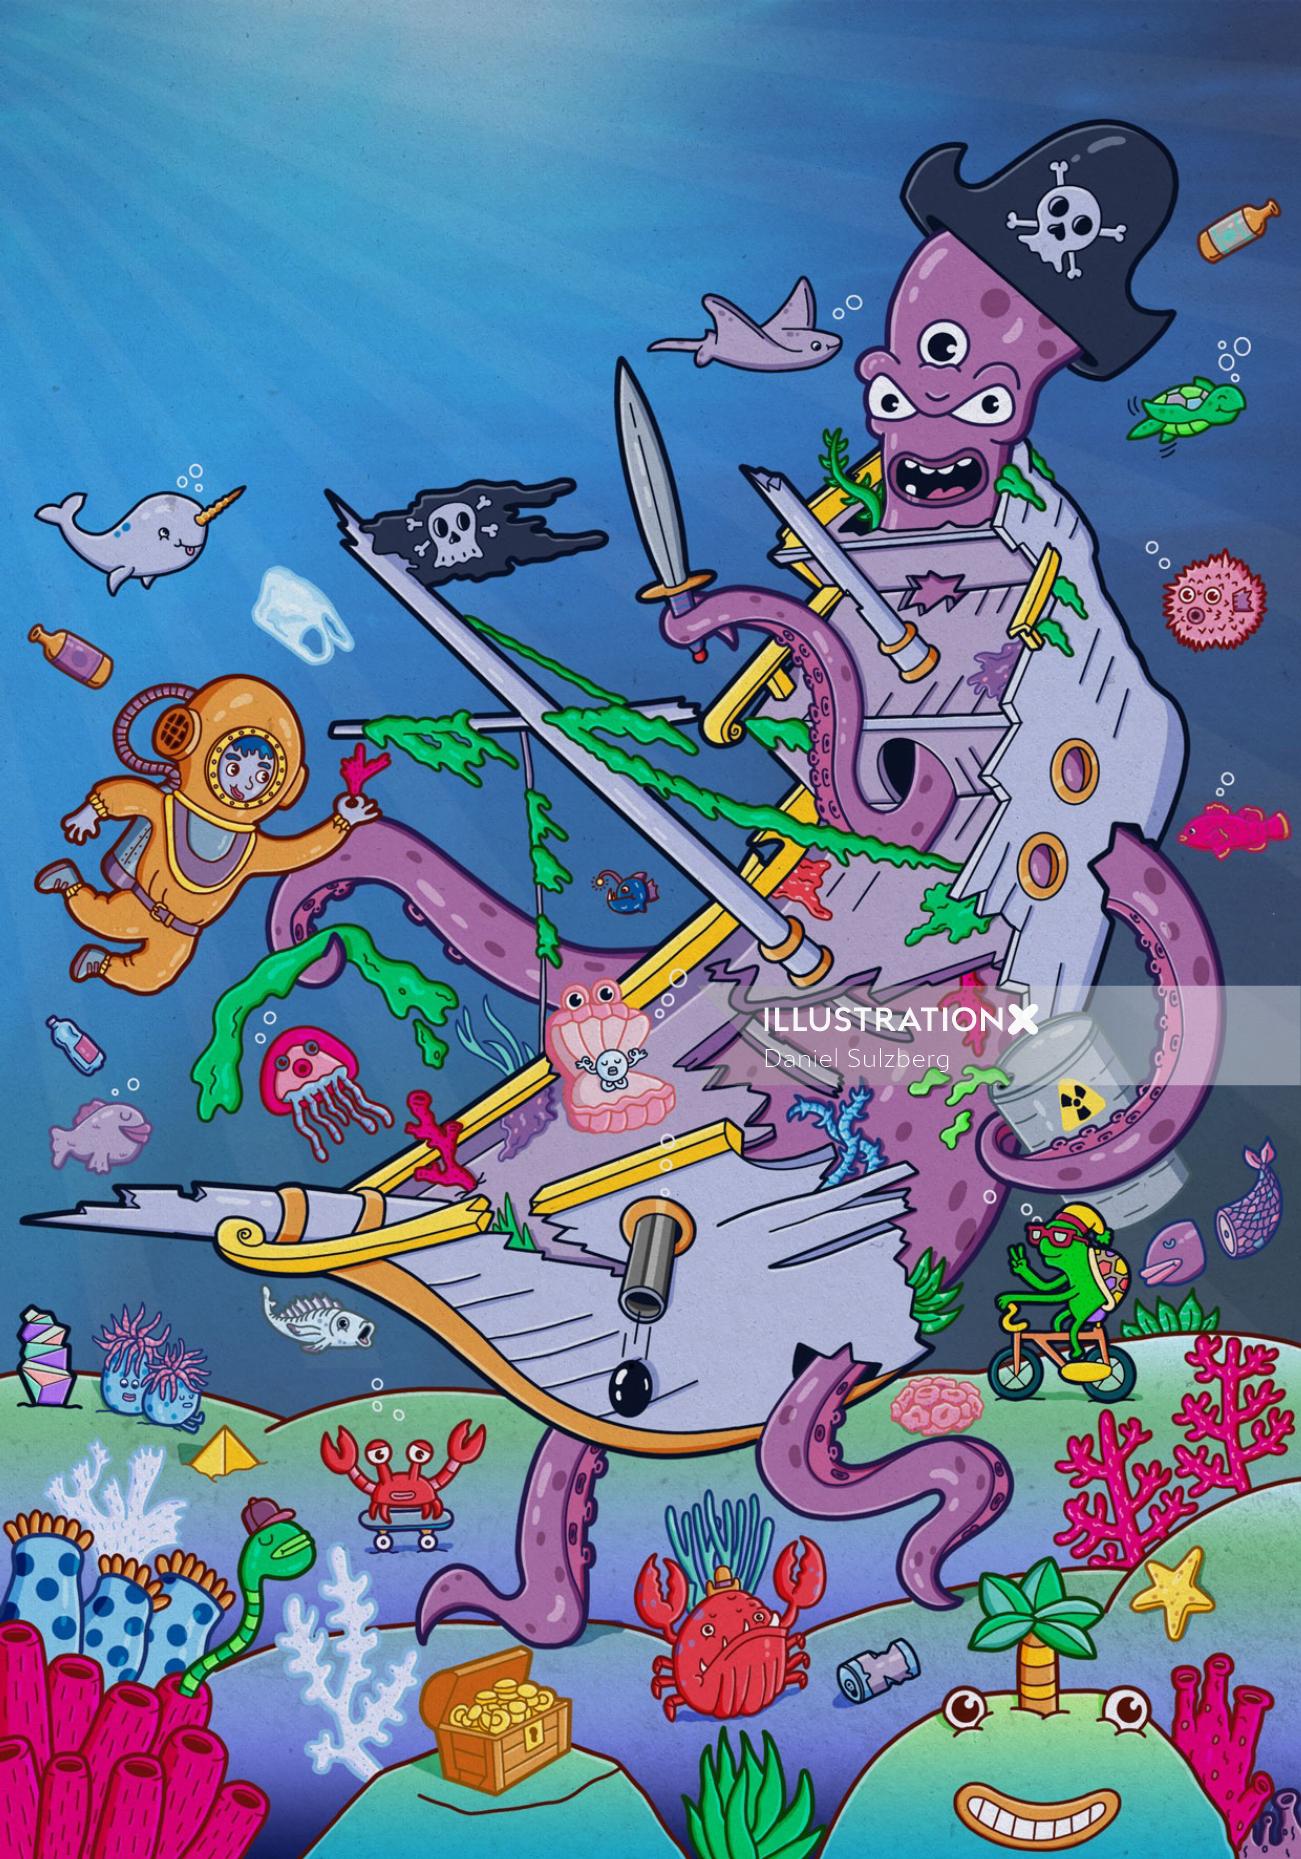 Monster octopus for Eyeyah! Kids Magazine